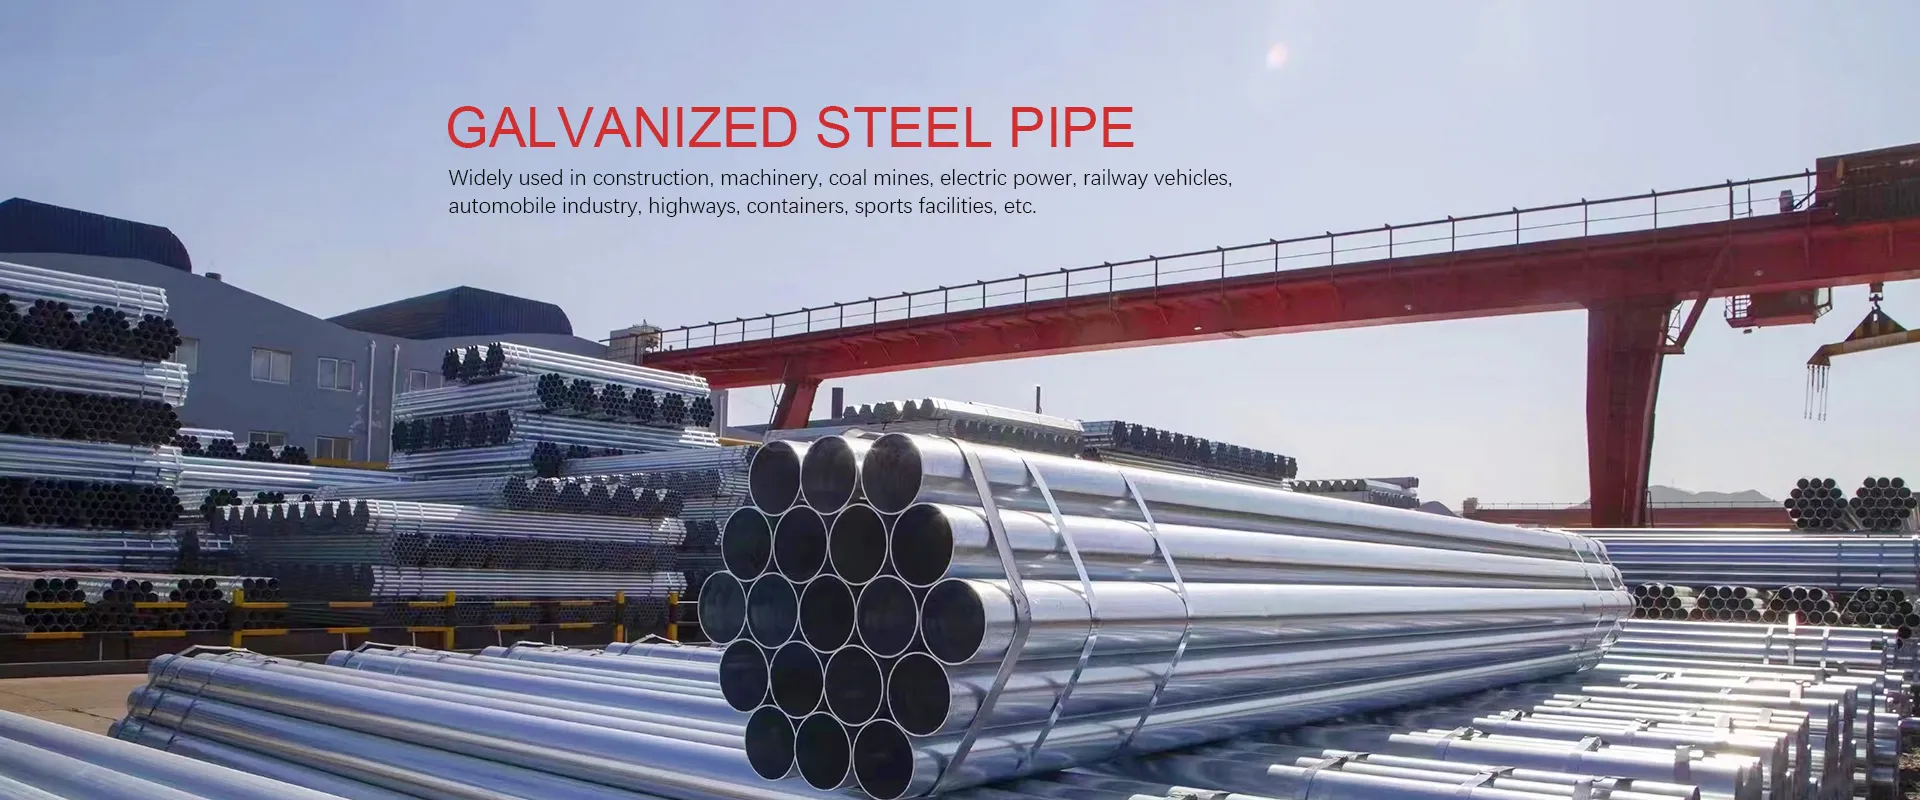 Fabricación de tubos de acero galvanizado en China